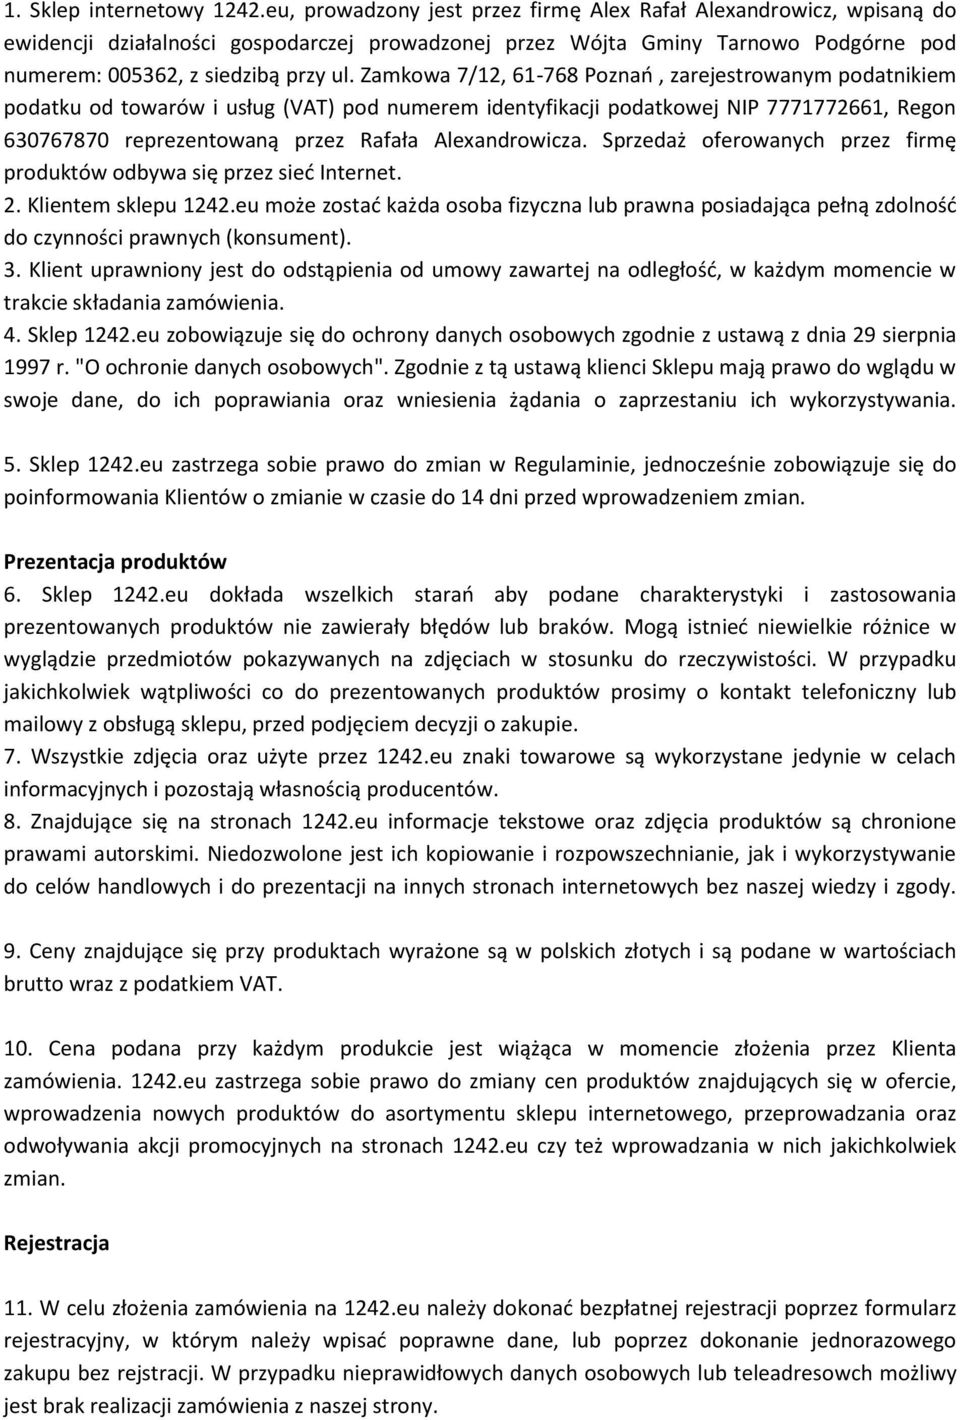 Zamkowa 7/12, 61-768 Poznań, zarejestrowanym podatnikiem podatku od towarów i usług (VAT) pod numerem identyfikacji podatkowej NIP 7771772661, Regon 630767870 reprezentowaną przez Rafała